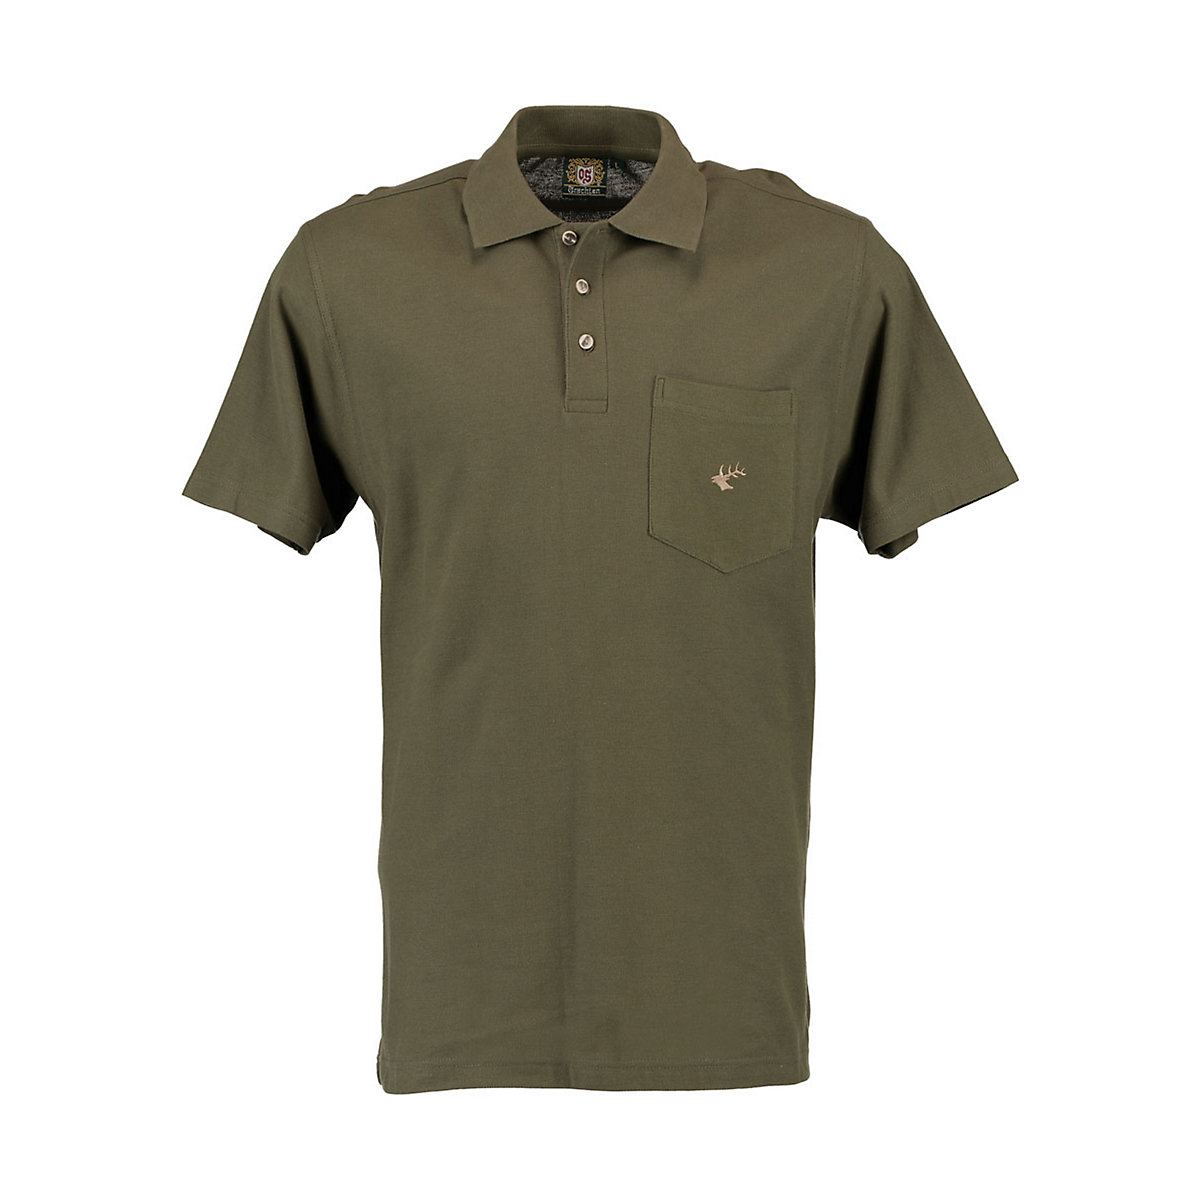 OS Trachten Herren Kurzarm Poloshirt mit Hirsch-Stickerei auf der Brusttasche Balun grün